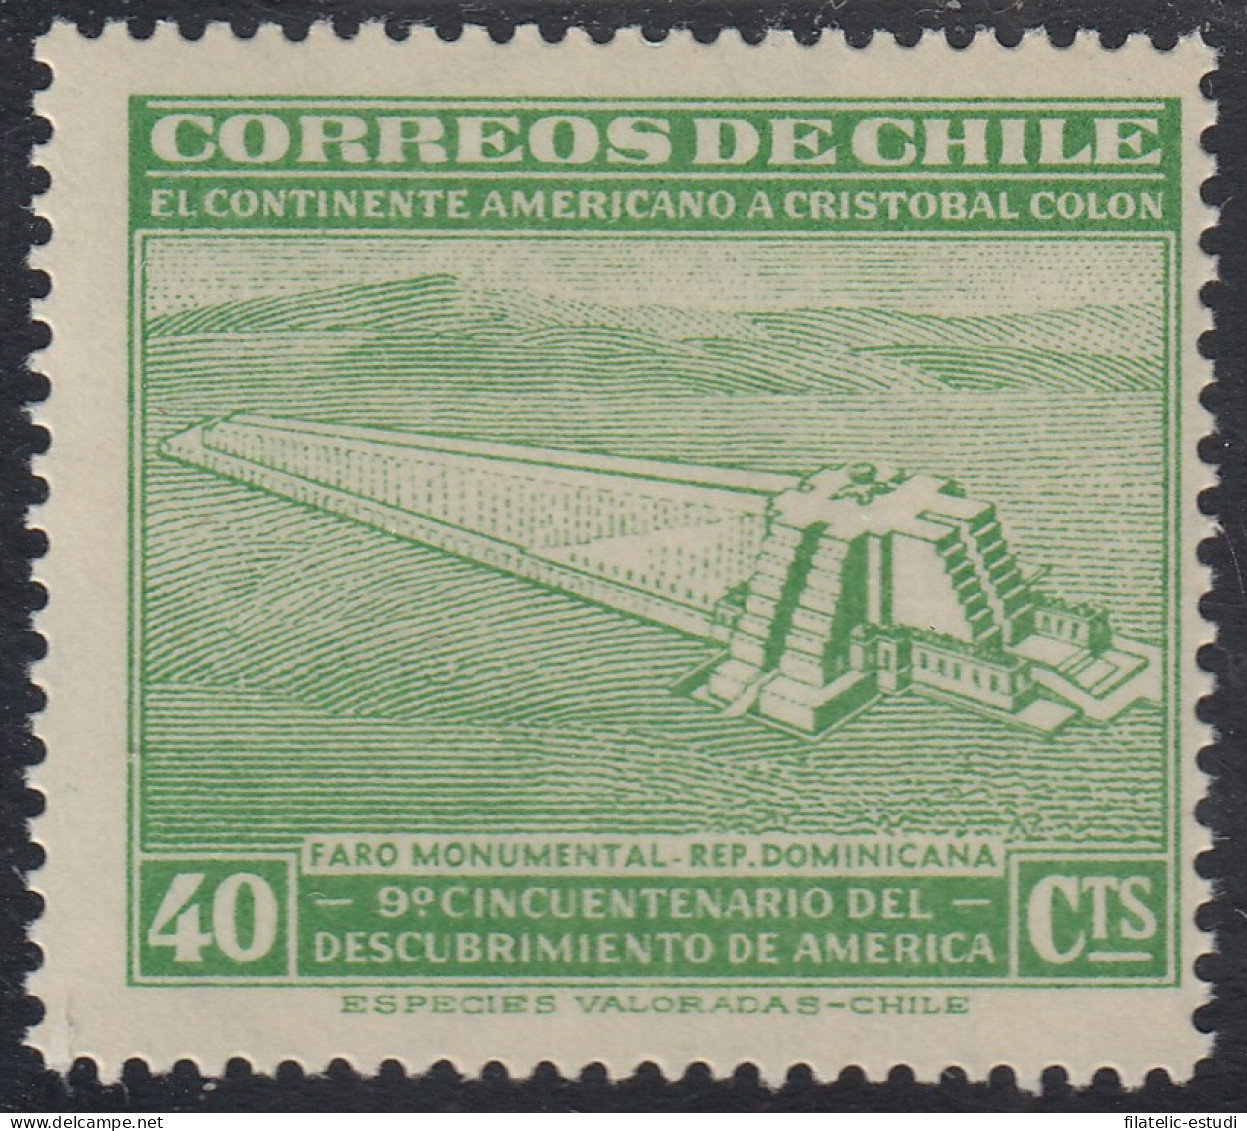 Chile 212 1945 Faro Monumental MH - Chili